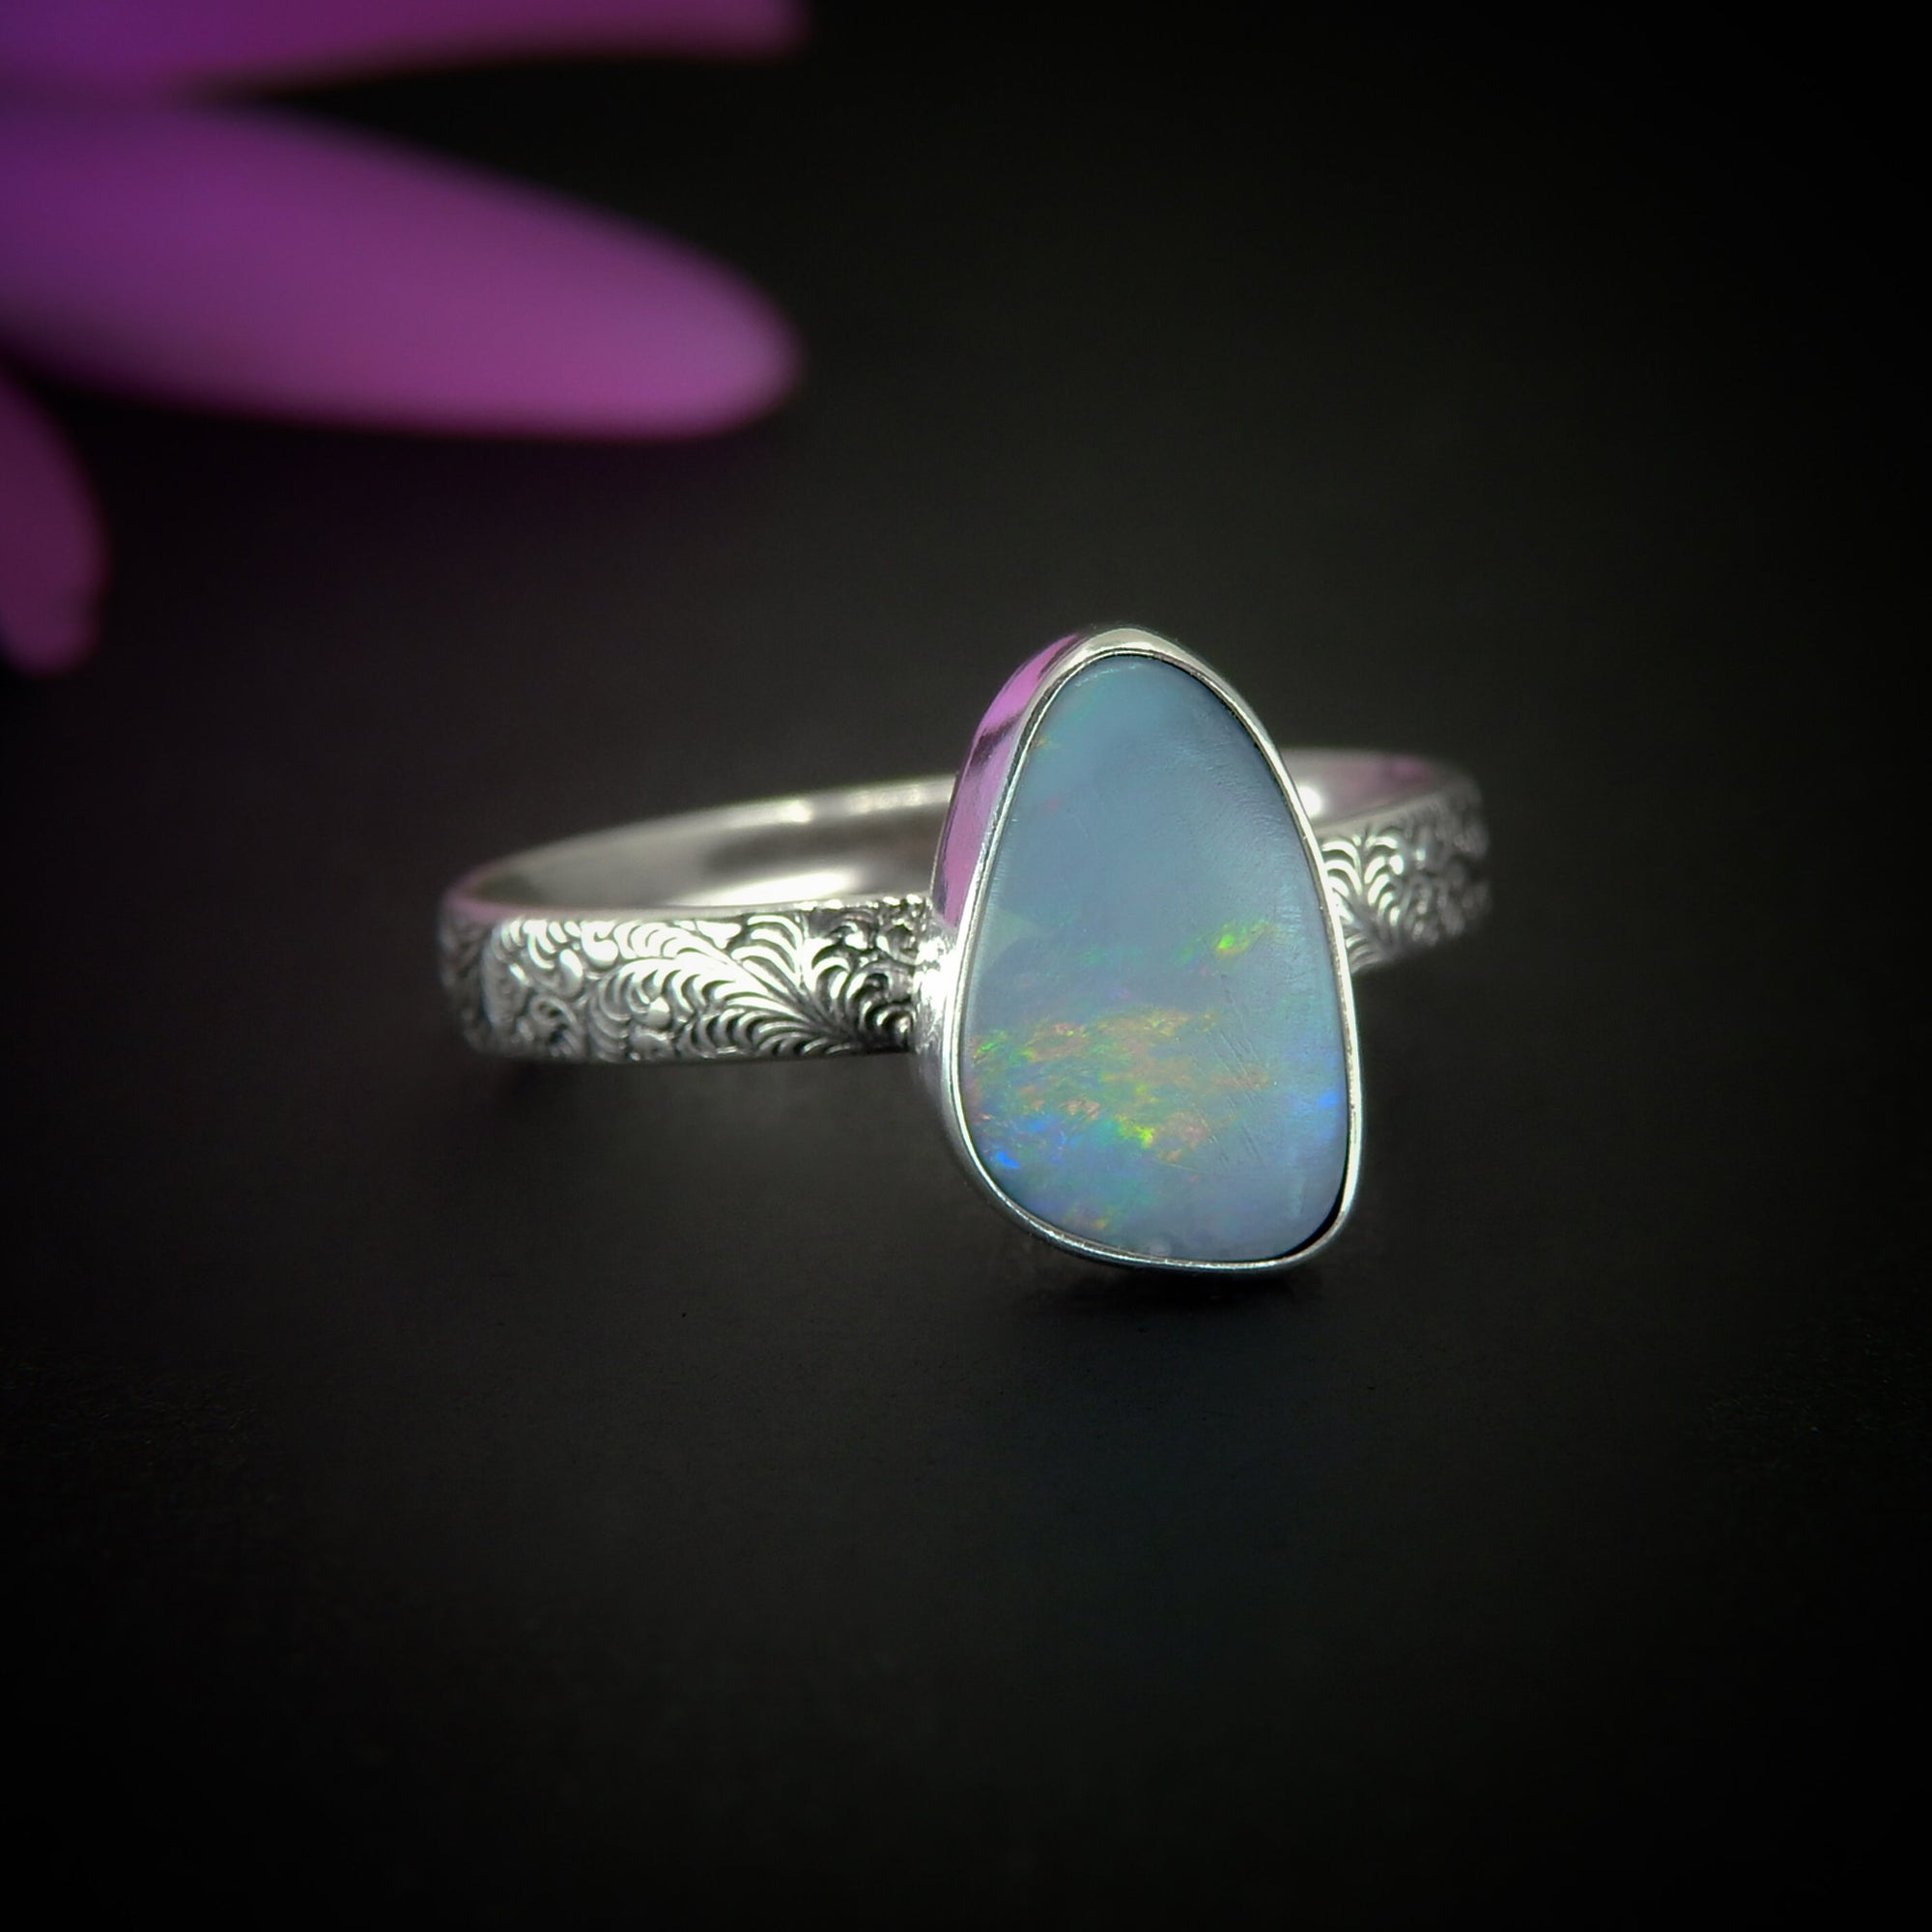 Australian Opal Ring - Size 11 1/4 to 11 1/2 - Sterling Silver - Lightning Ridge Opal Ring, Dainty Opal Jewelry, Blue Australian Opal OOAK